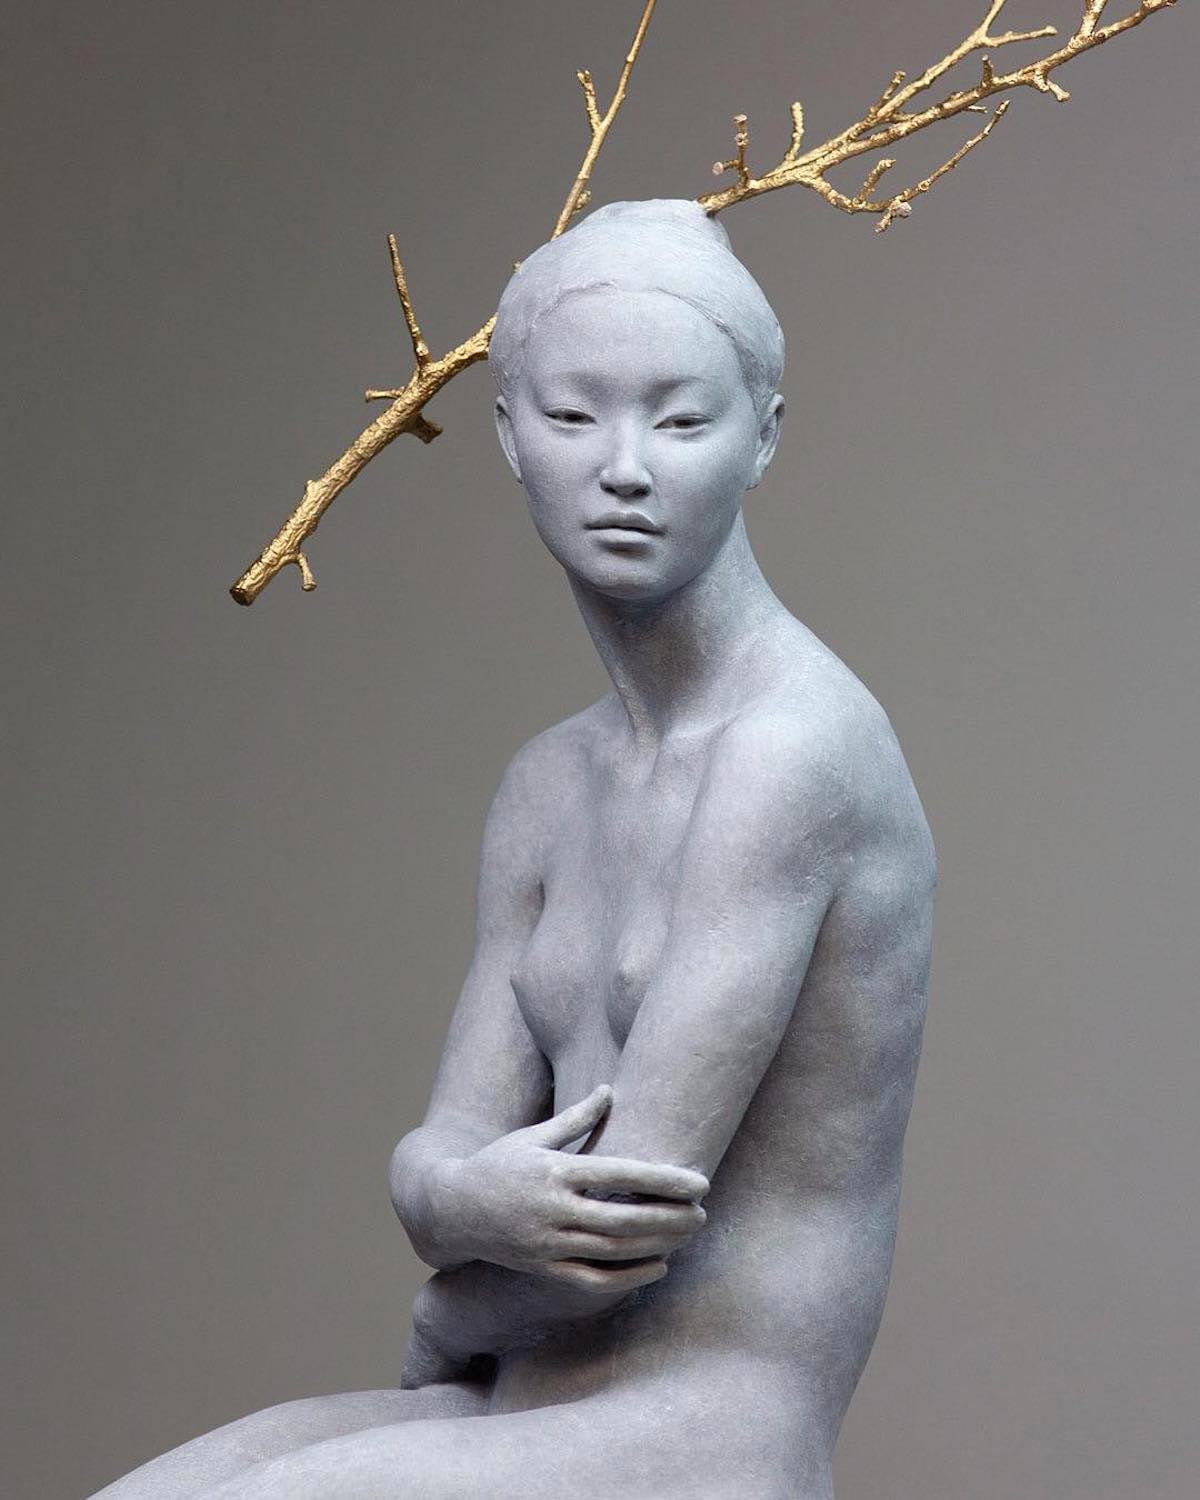 Belleza del cuerpo humano en las esculturas de Coderch & Malavia